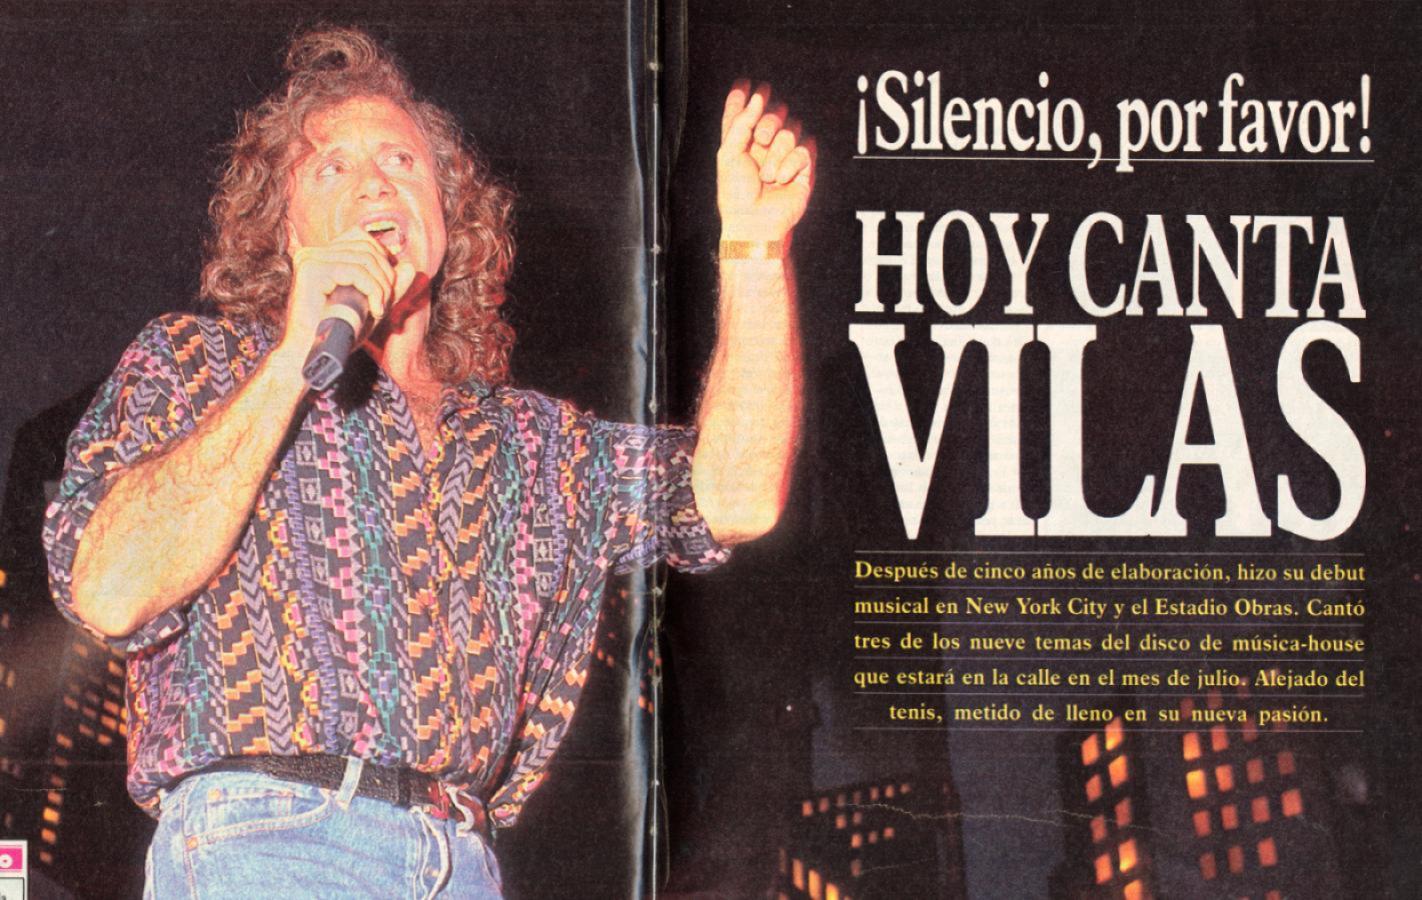 Imagen "Silencio, hoy canta Vilas", tituló El Gráfico.